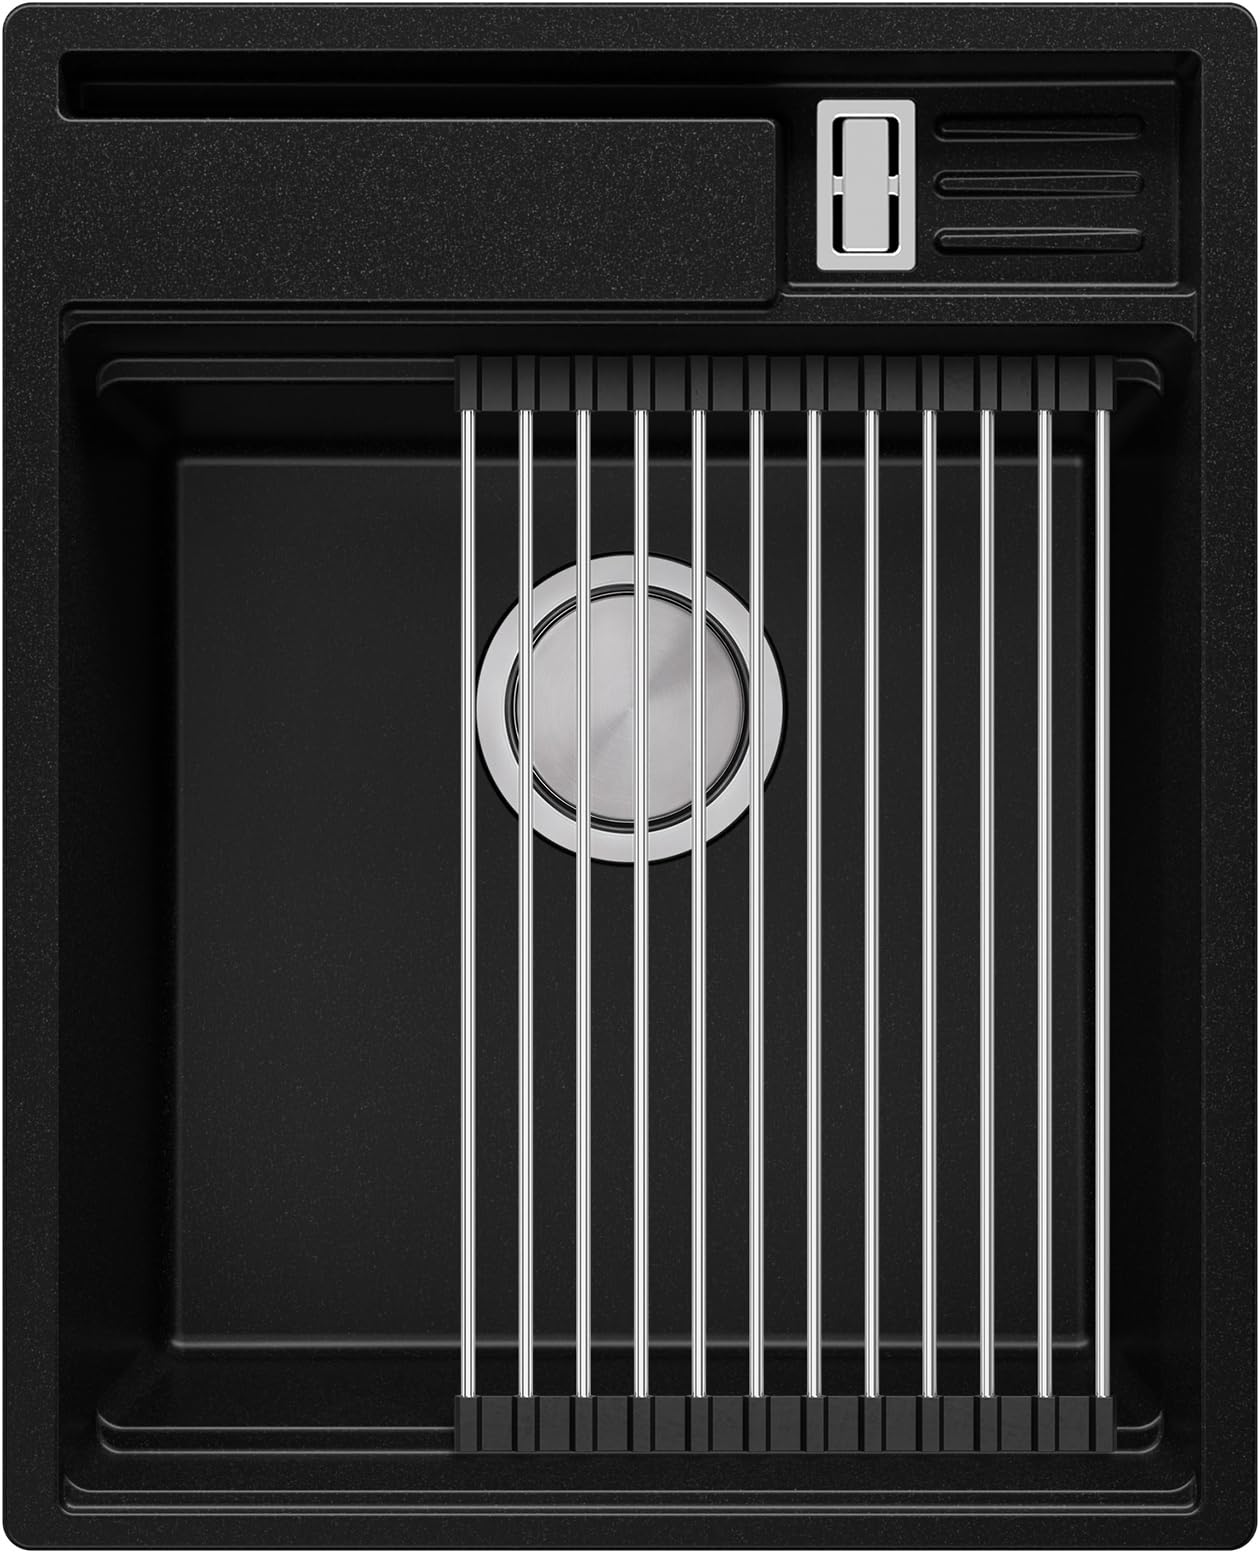 Granitspüle Schwarz 78x50 cm, Spülbecken + Ablauf-Set + Küchenarmatur 8000 + Aufrollbare Abtropffläche, Küchenspüle für 50er Unterschrank, Einbauspüle von Primagran